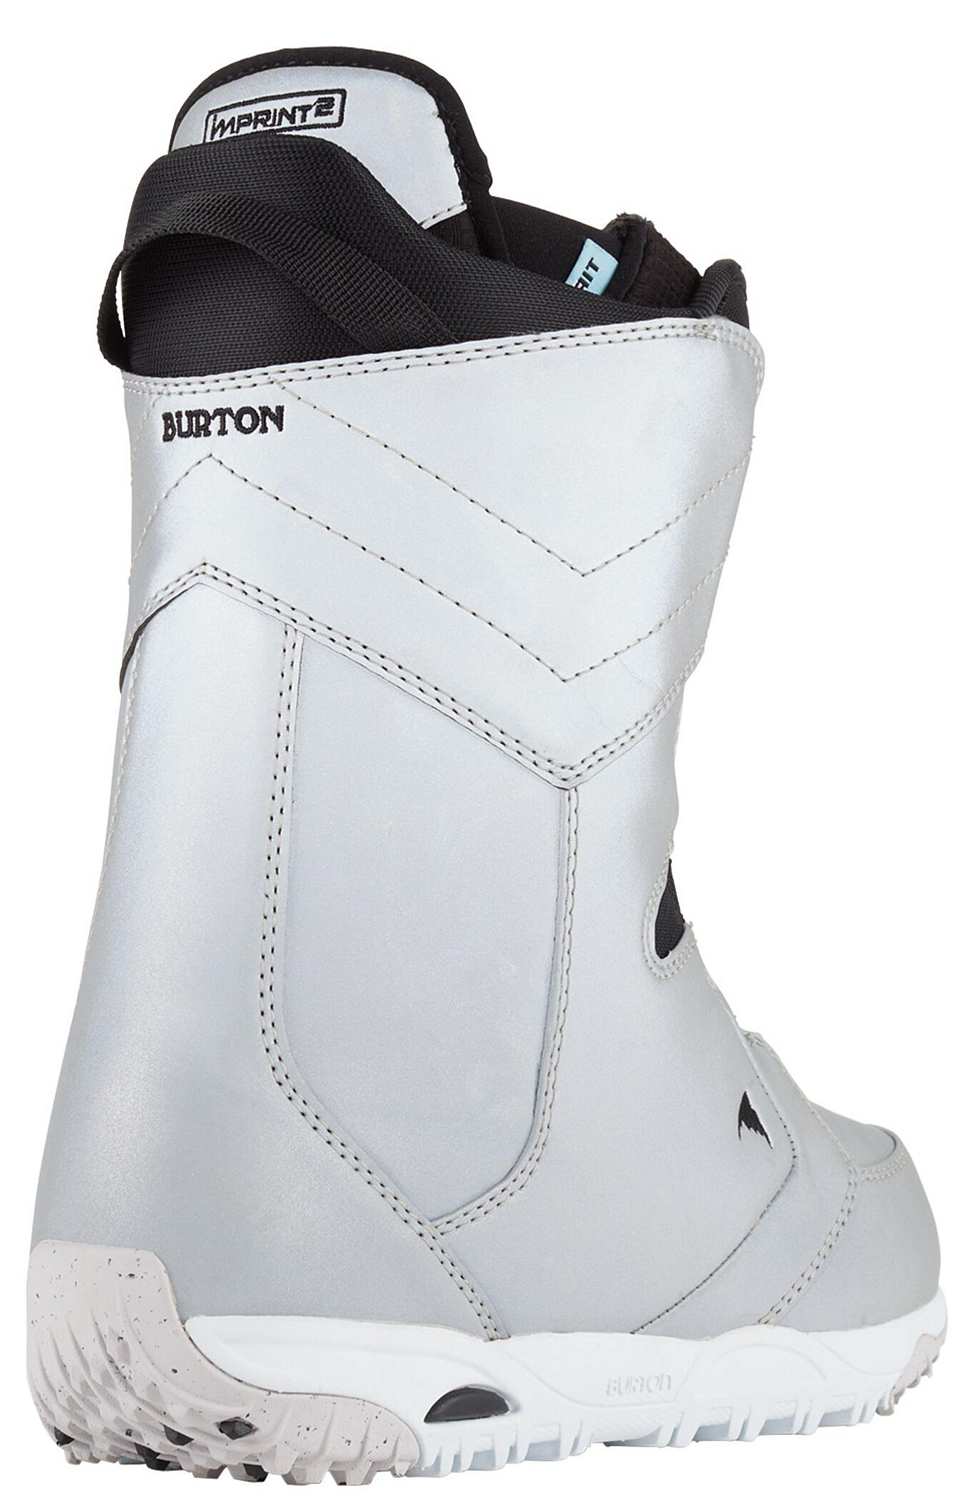 Ботинки для сноуборда BURTON 2020-21 Limelight Boa Gray reflective